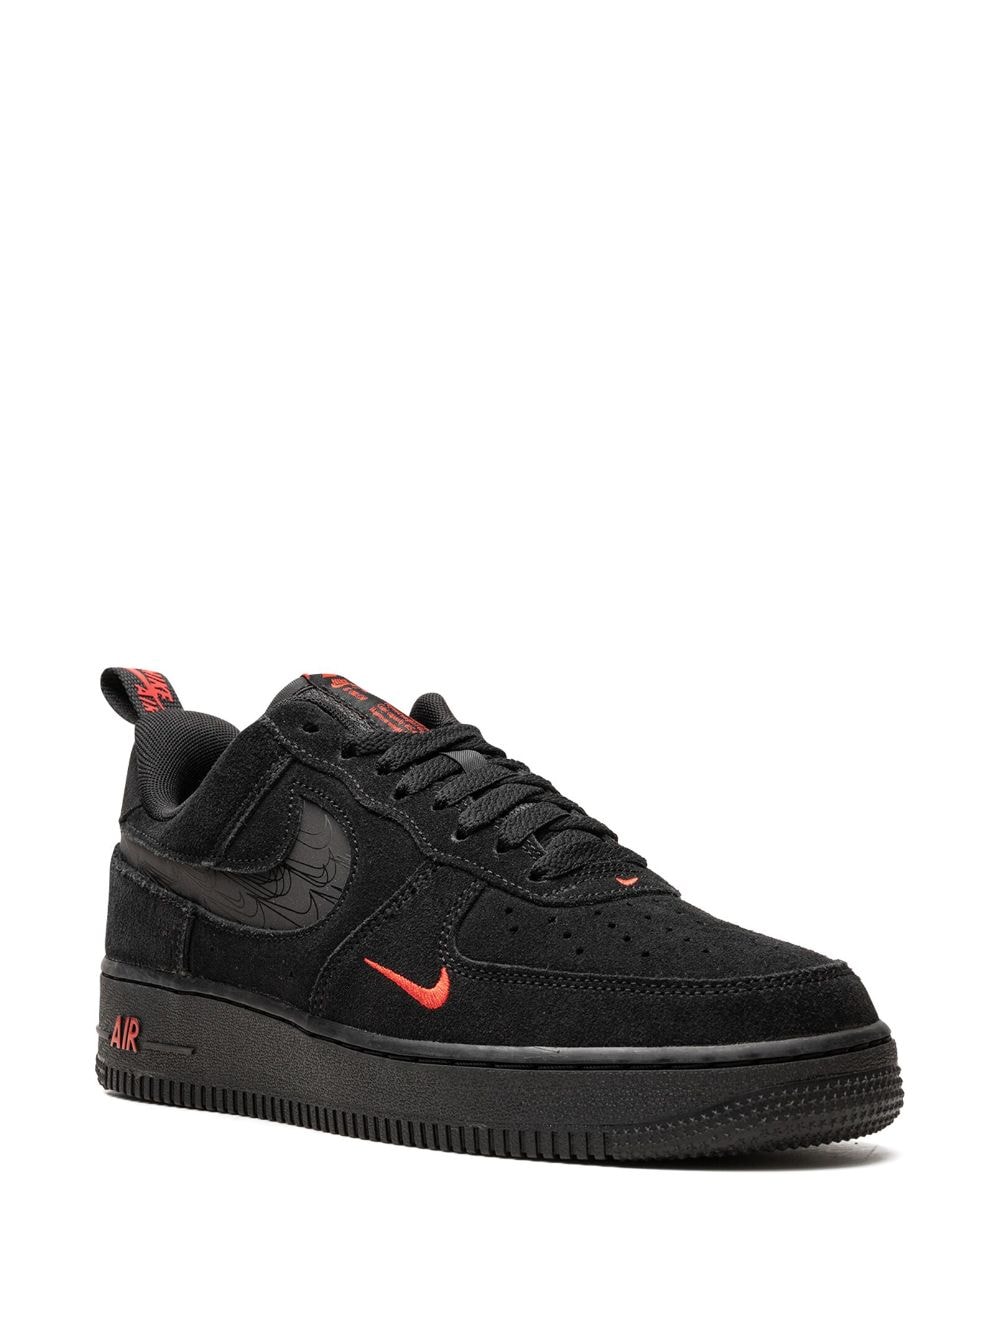 Image 2 of Nike Air Force 1 Low "Multi Swoosh Black/Crimson" sneakers